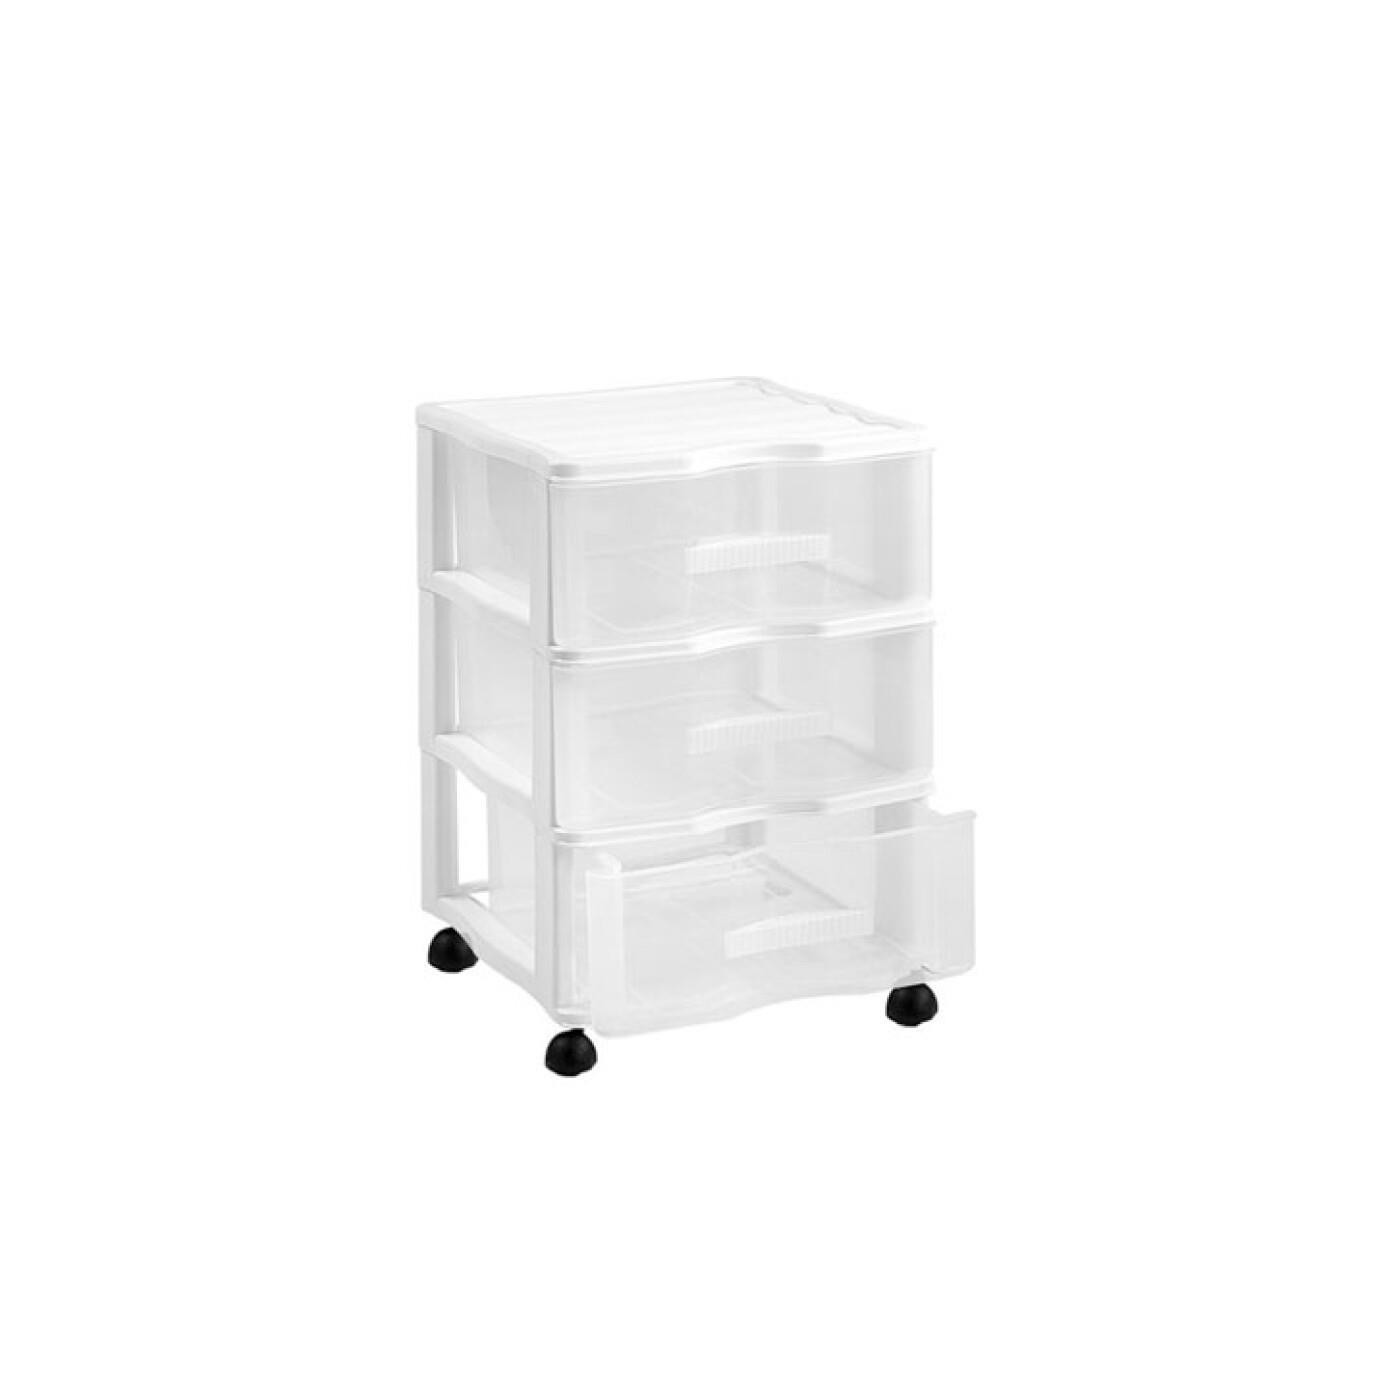 Tradineur - Cajonera de sobremesa, plástico, 4 cajones transparentes, torre  de almacenaje, armario, baño, oficina, fabricada en